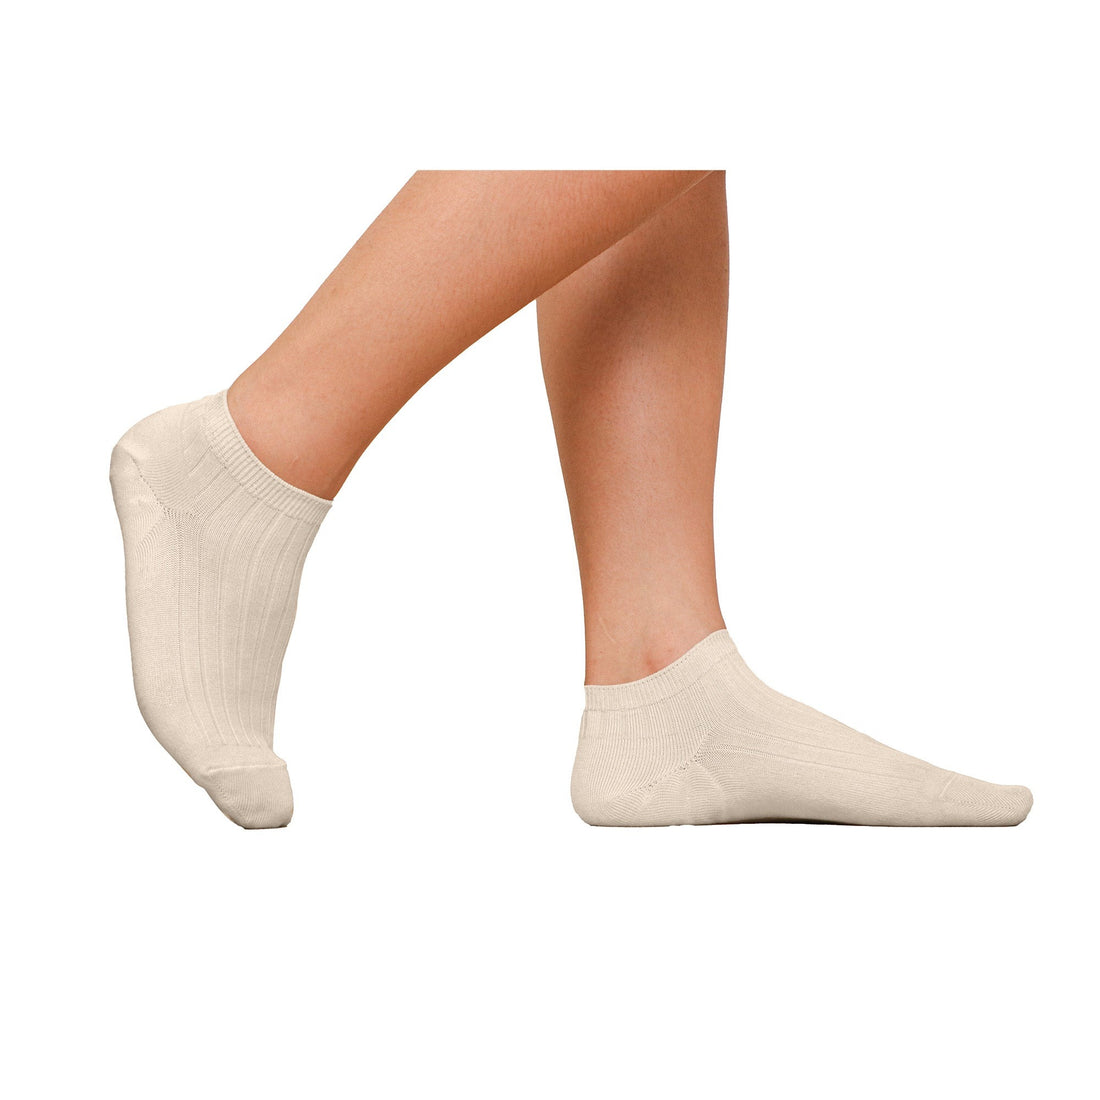 ถุงเท้าข้้อสั้น Cotton Socks Anti-bacteria รุ่น WW1106 สีขาว (WH)